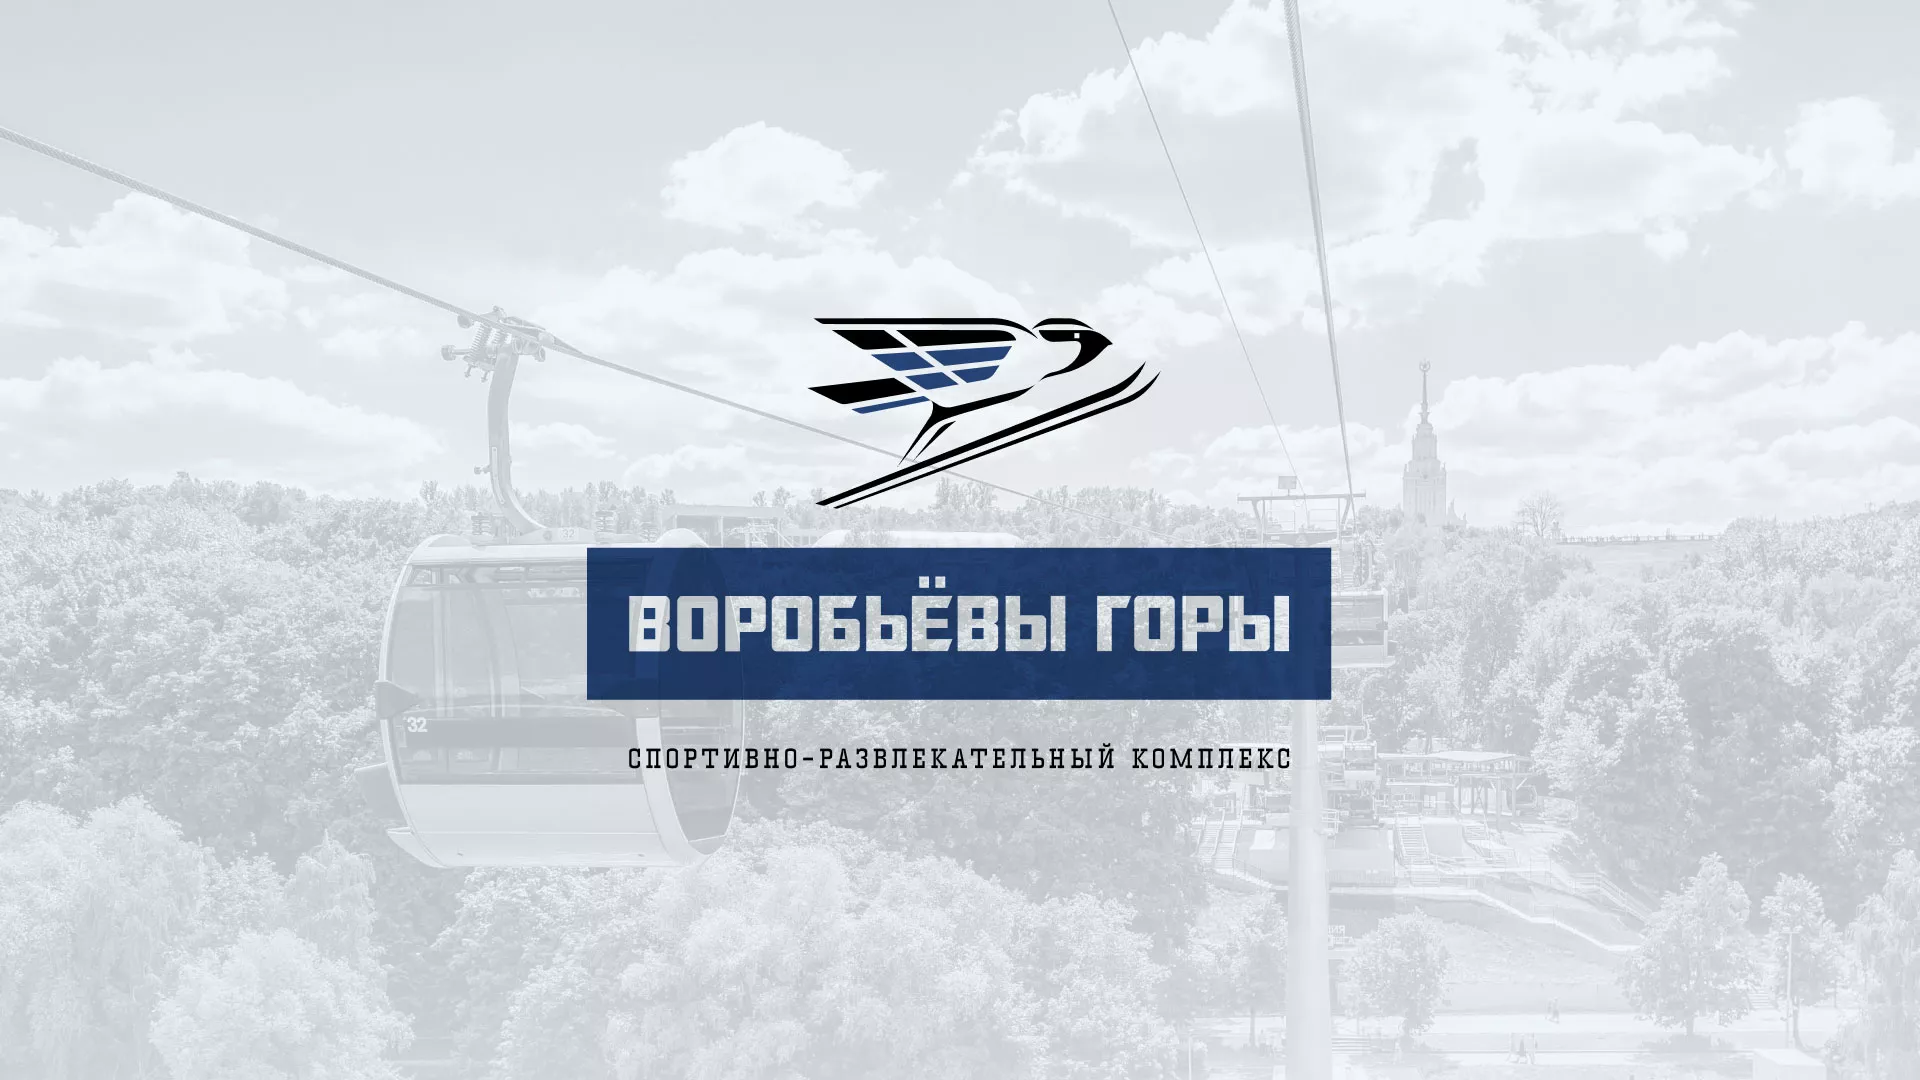 Разработка сайта в Кызыле для спортивно-развлекательного комплекса «Воробьёвы горы»